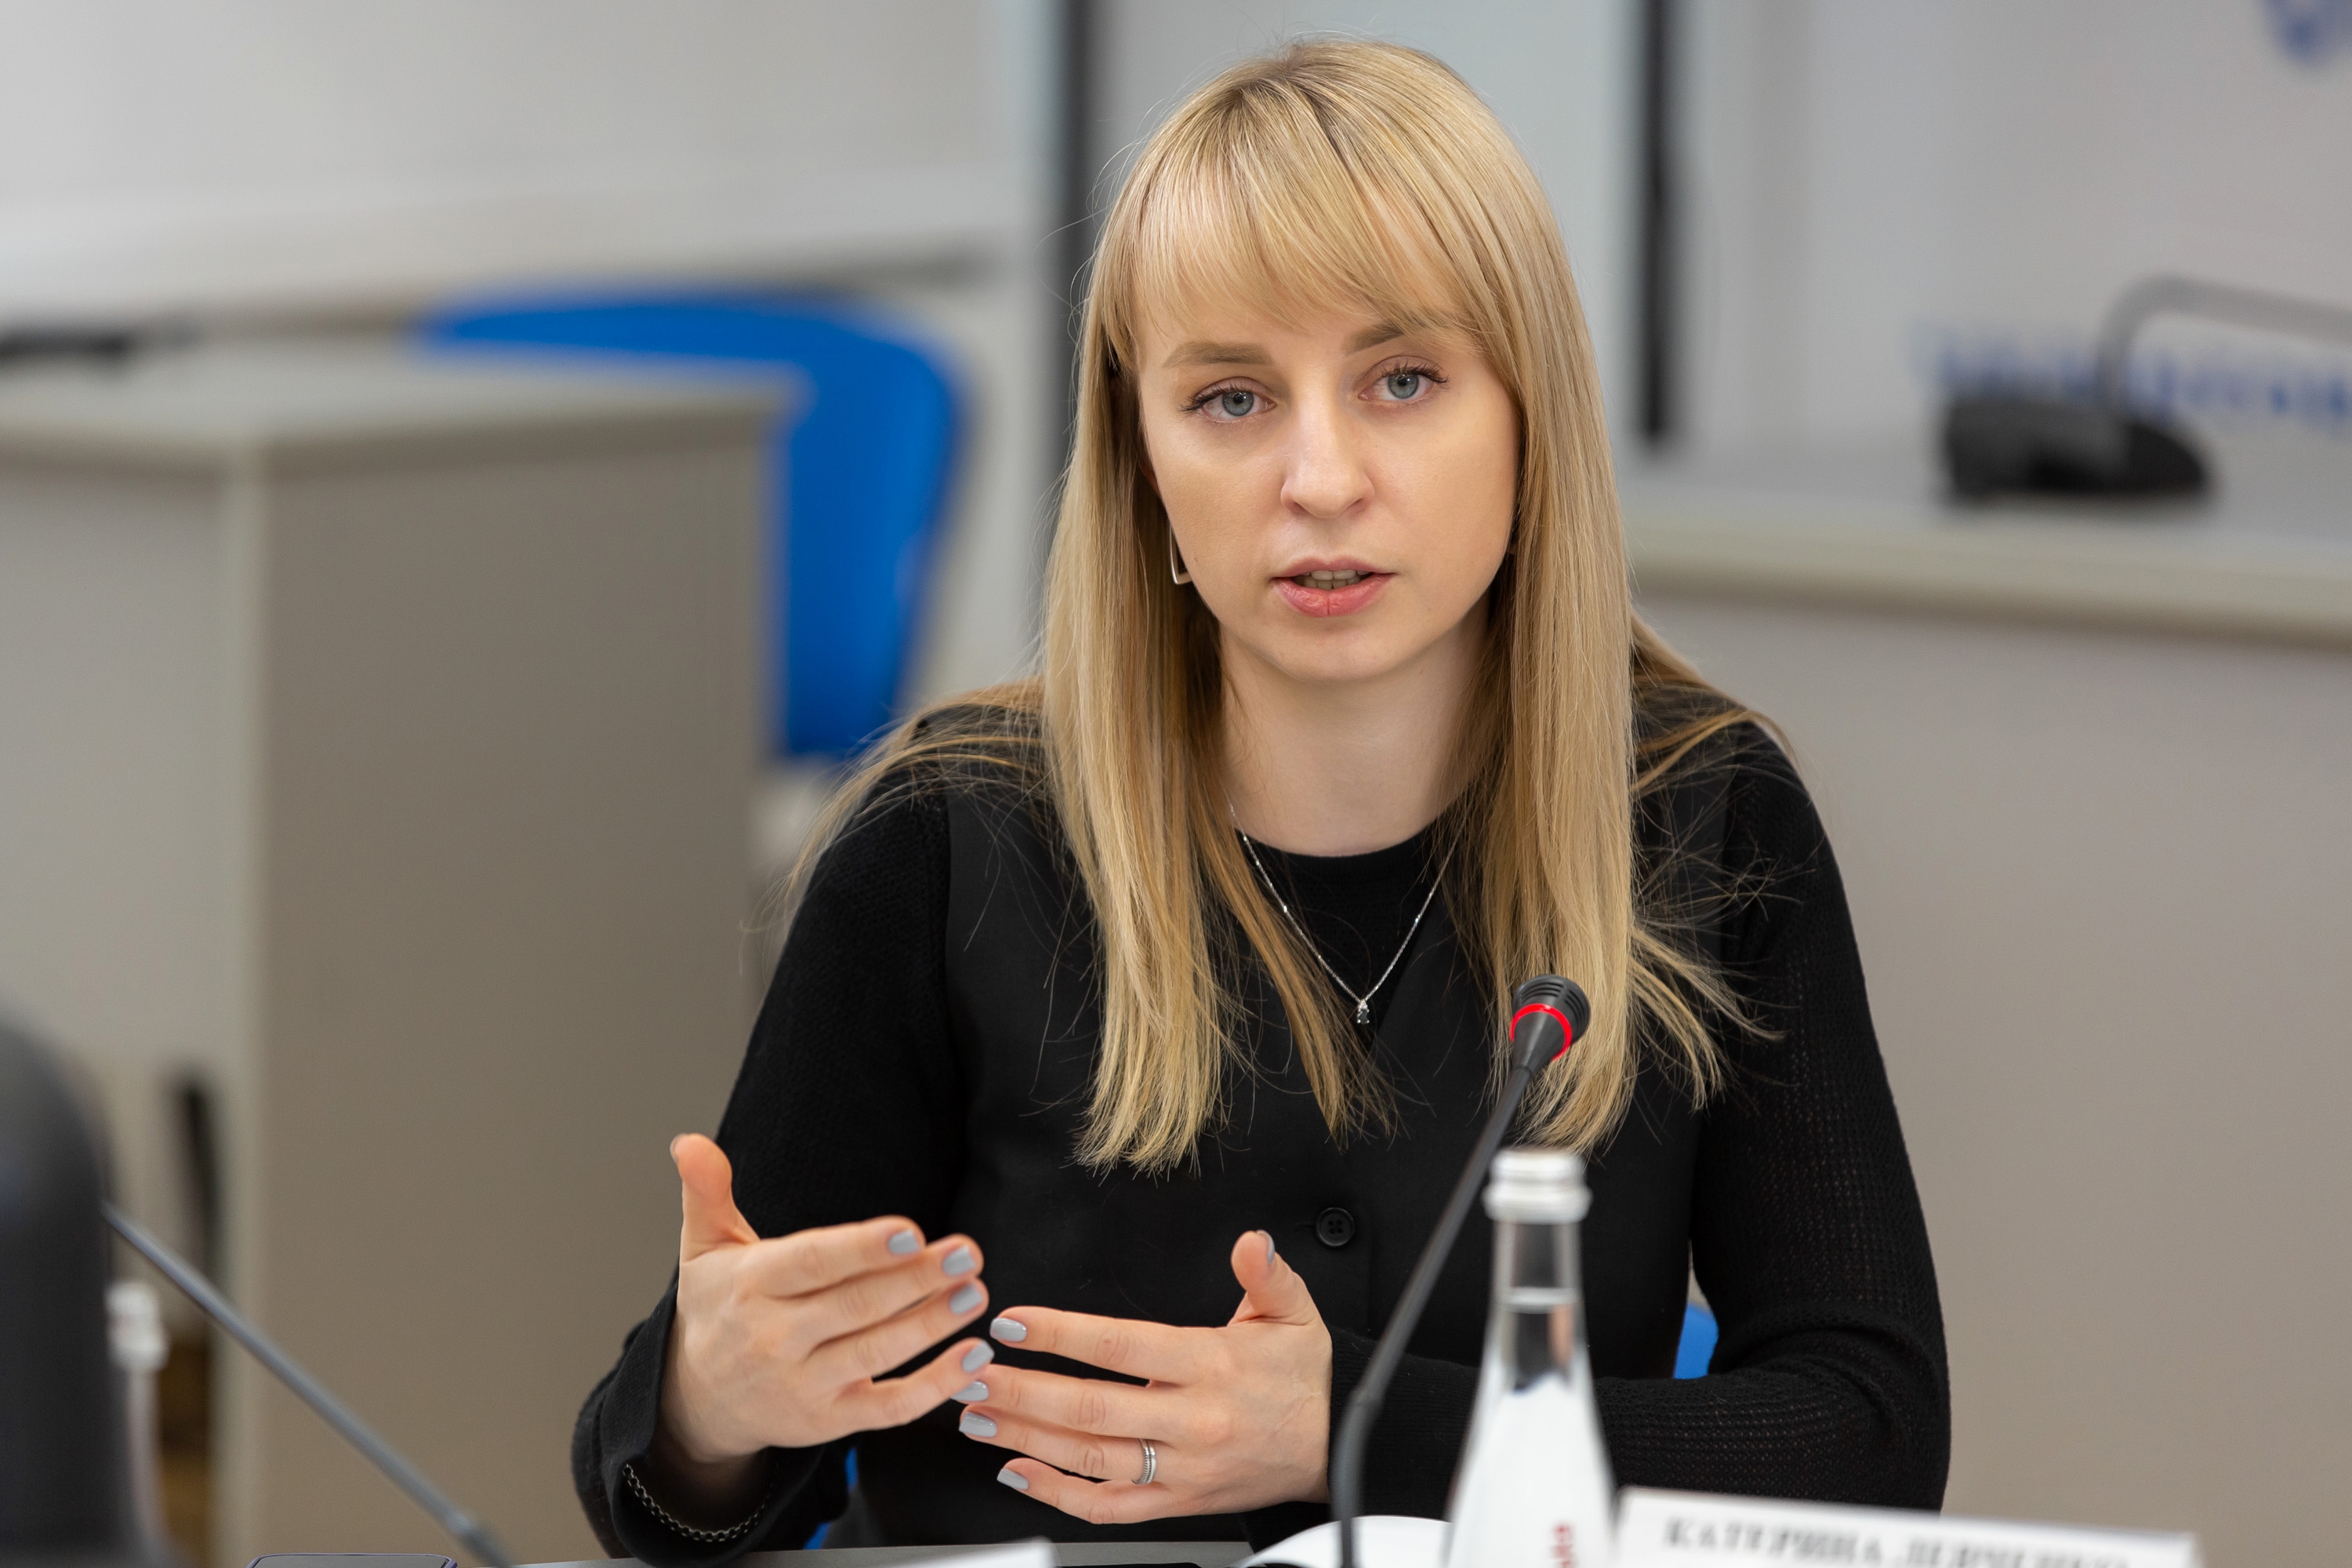 Кількість заяв про вчинення домашнього насильства збільшується - Катерина Павліченко